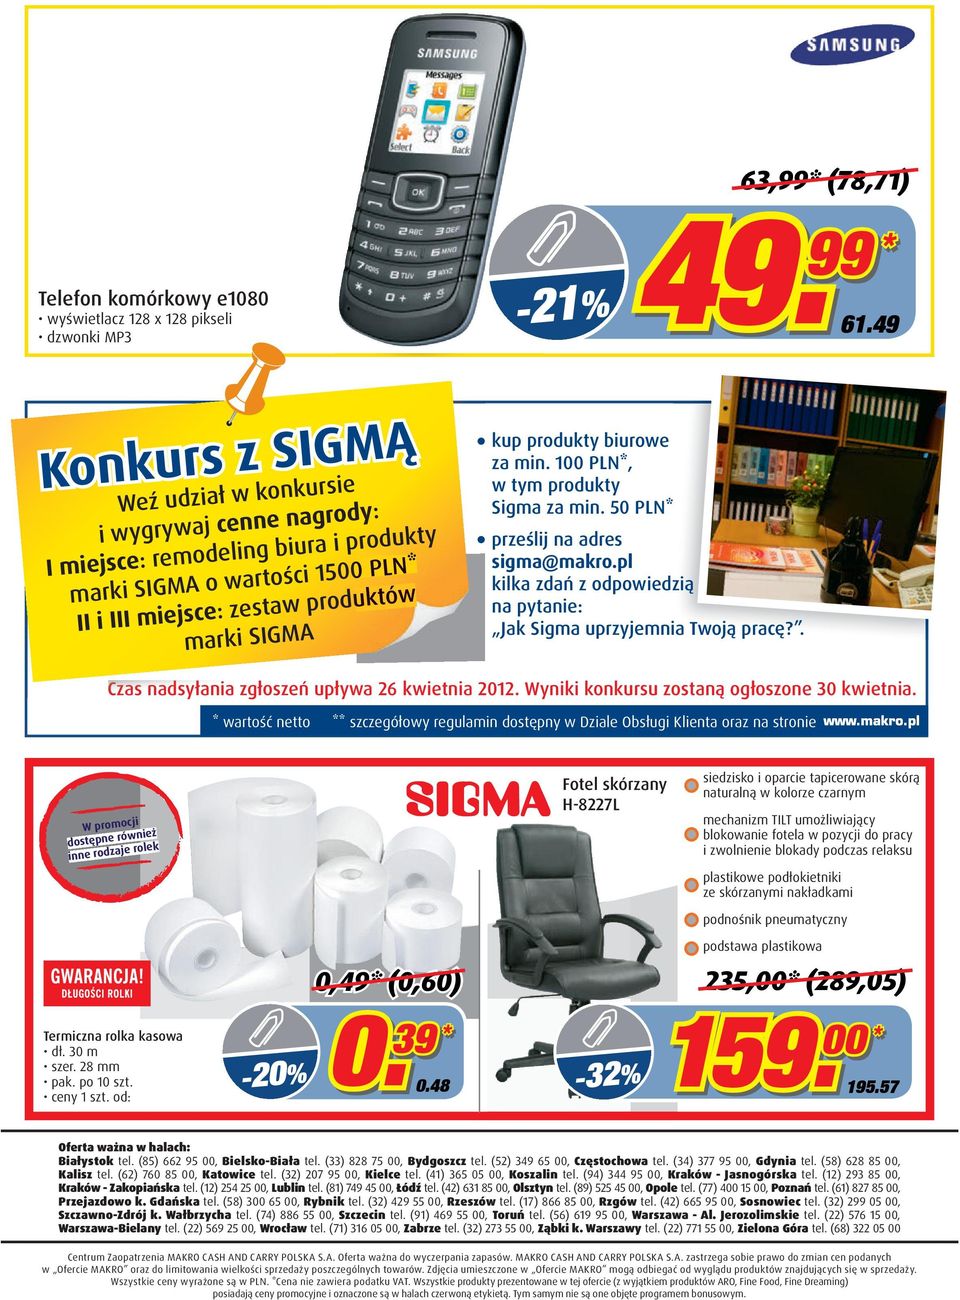 biurowe za min. 1 PLN, w tym produkty Sigma za min. 50 PLN prześlij na adres sigma@makro.pl kilka zdań z odpowiedzią na pytanie: Jak Sigma uprzyjemnia Twoją pracę?